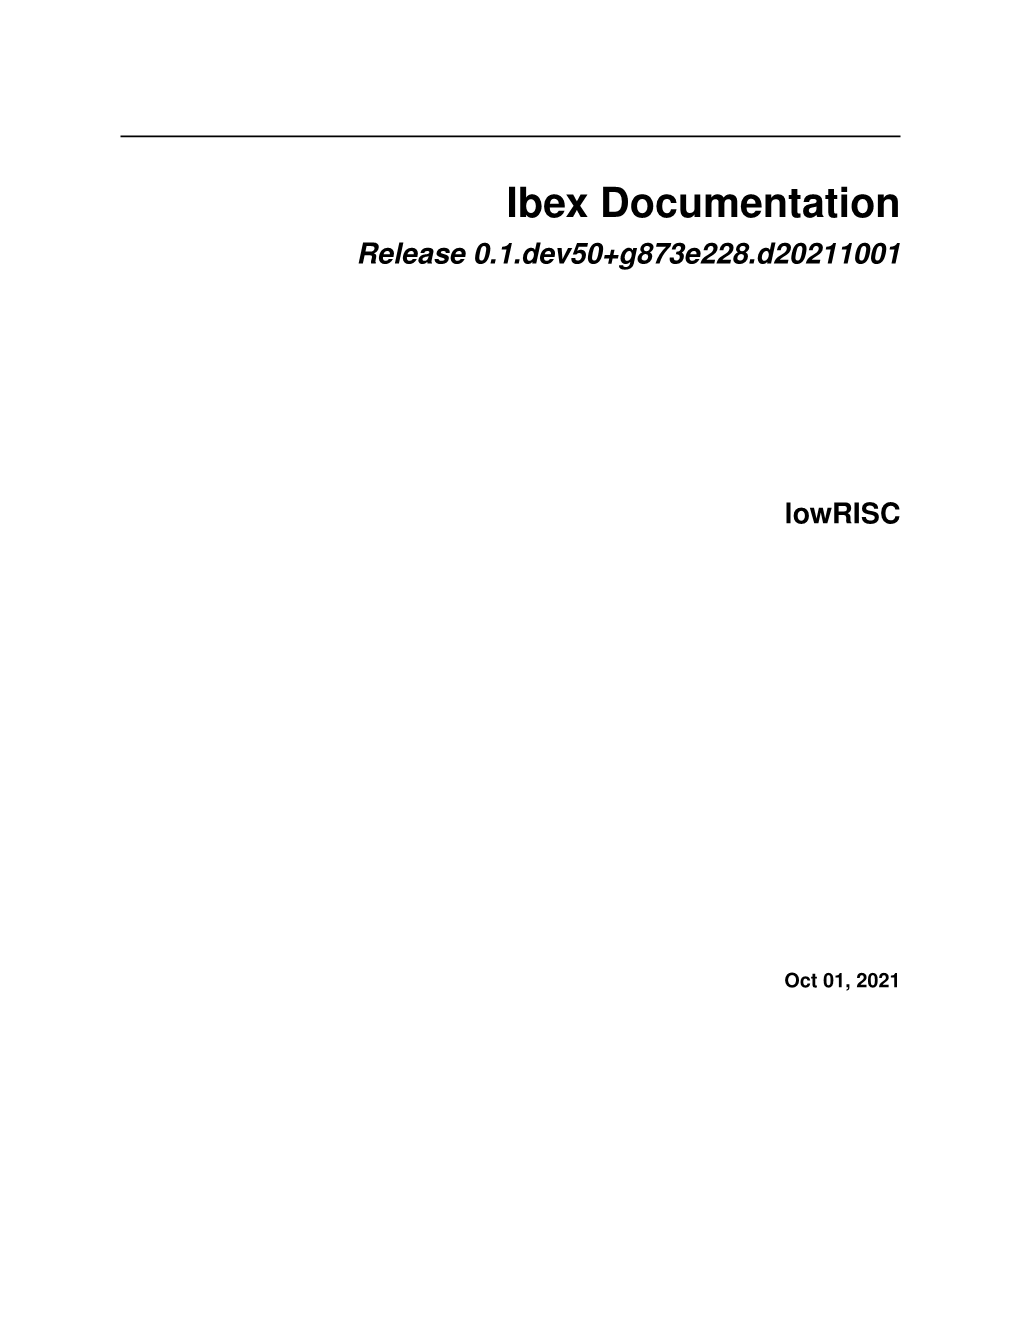 Ibex Documentation Release 0.1.Dev50+G873e228.D20211001